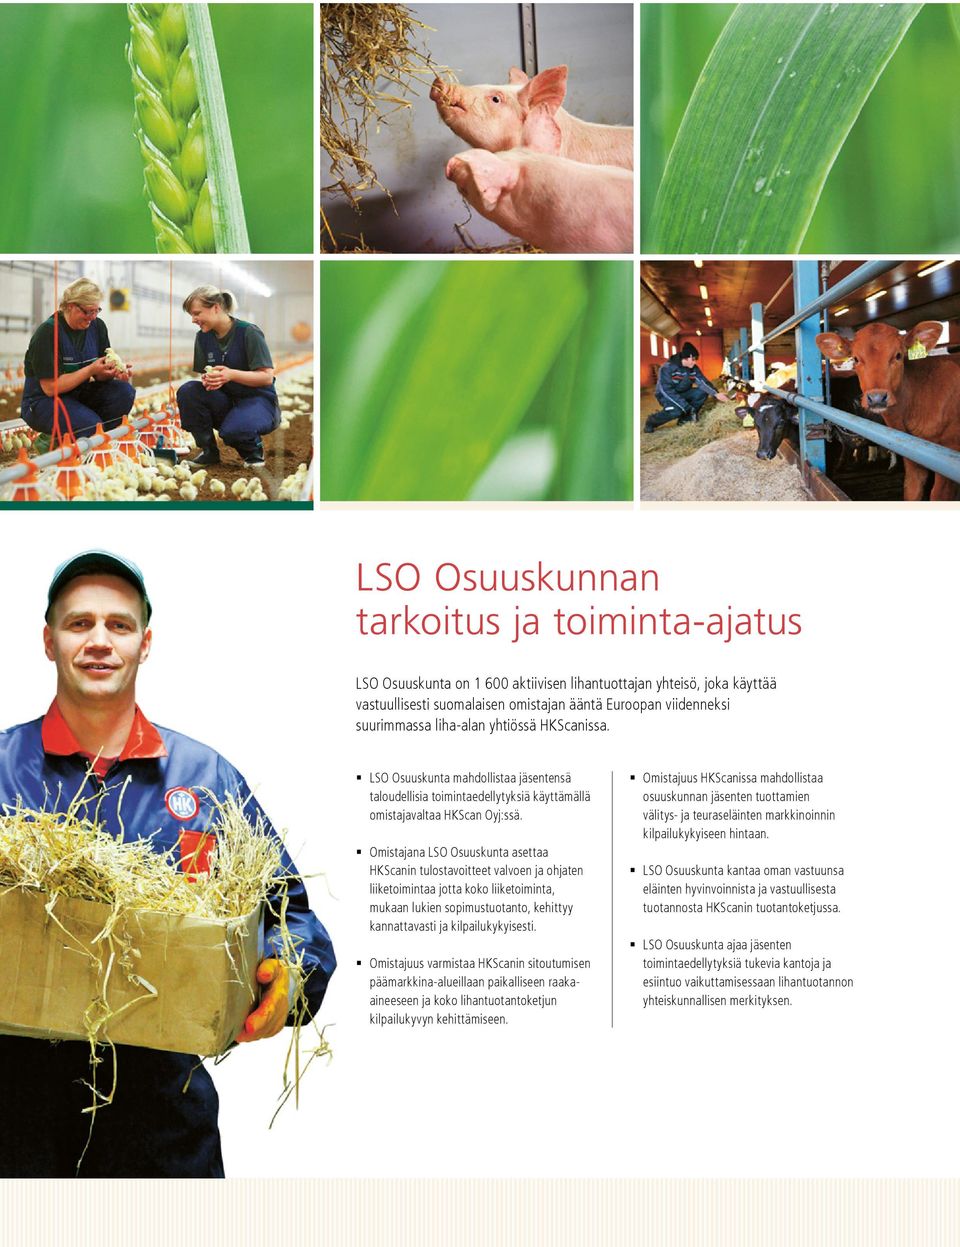 Omistajana LSO Osuuskunta asettaa HKScanin tulostavoitteet valvoen ja ohjaten liiketoimintaa jotta koko liiketoiminta, mukaan lukien sopimustuotanto, kehittyy kannattavasti ja kilpailukykyisesti.